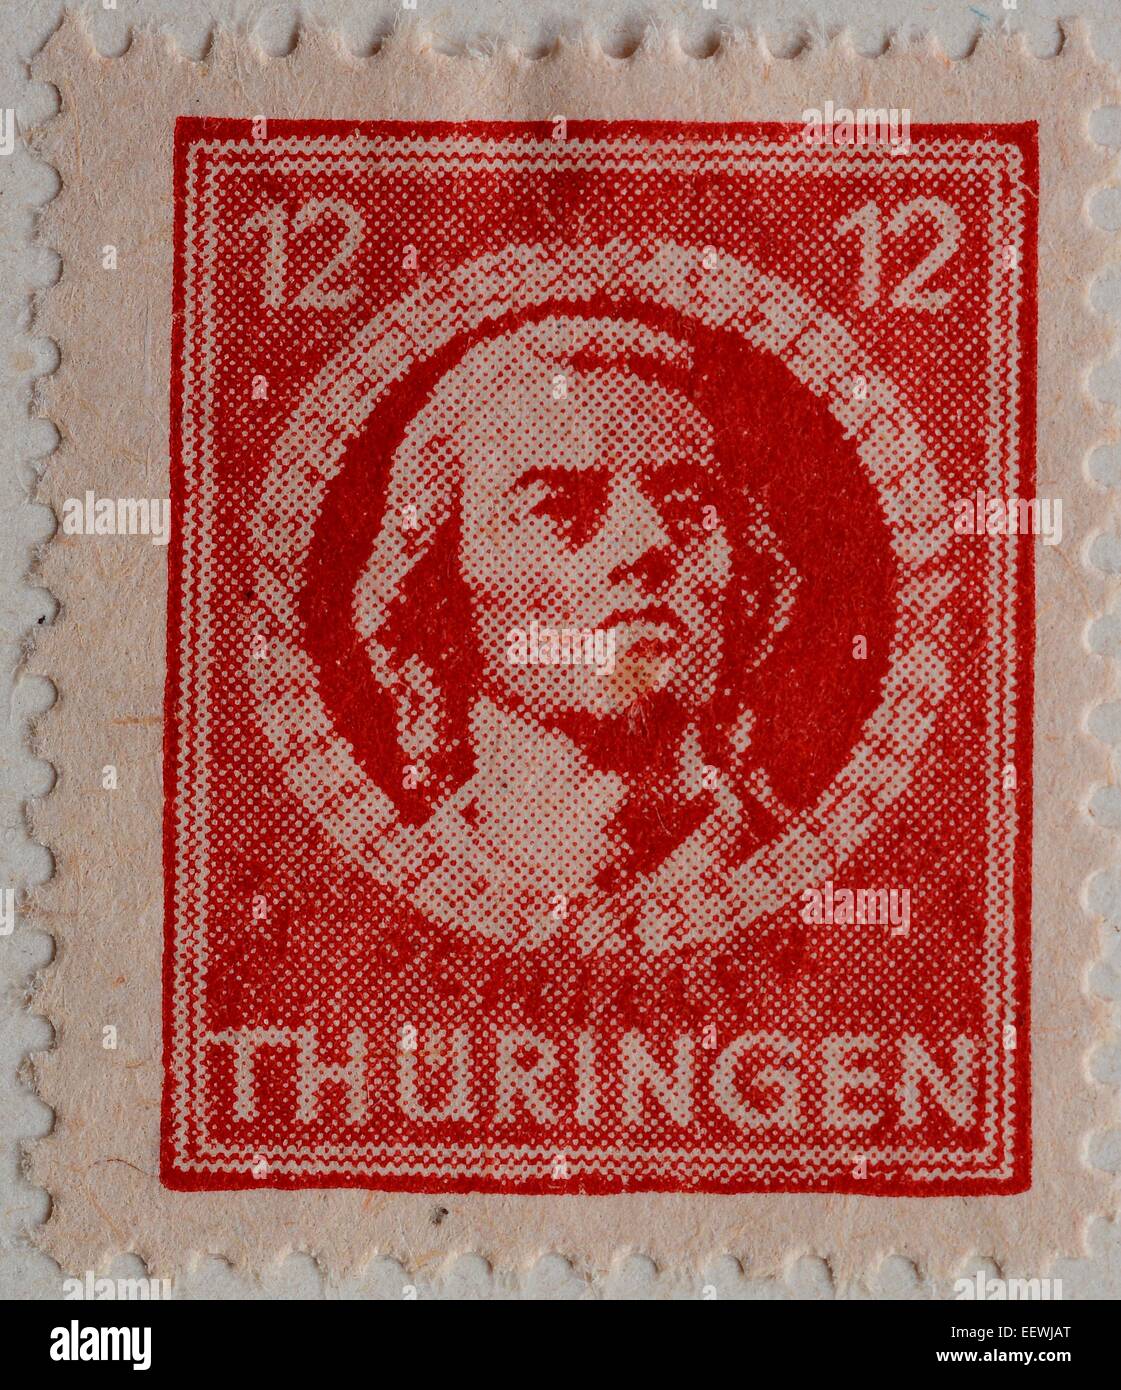 Friedrich von Schiller, un poète allemand, philosophe, historien et dramaturge, portrait sur un timbre de Thüringen, 1945 Banque D'Images